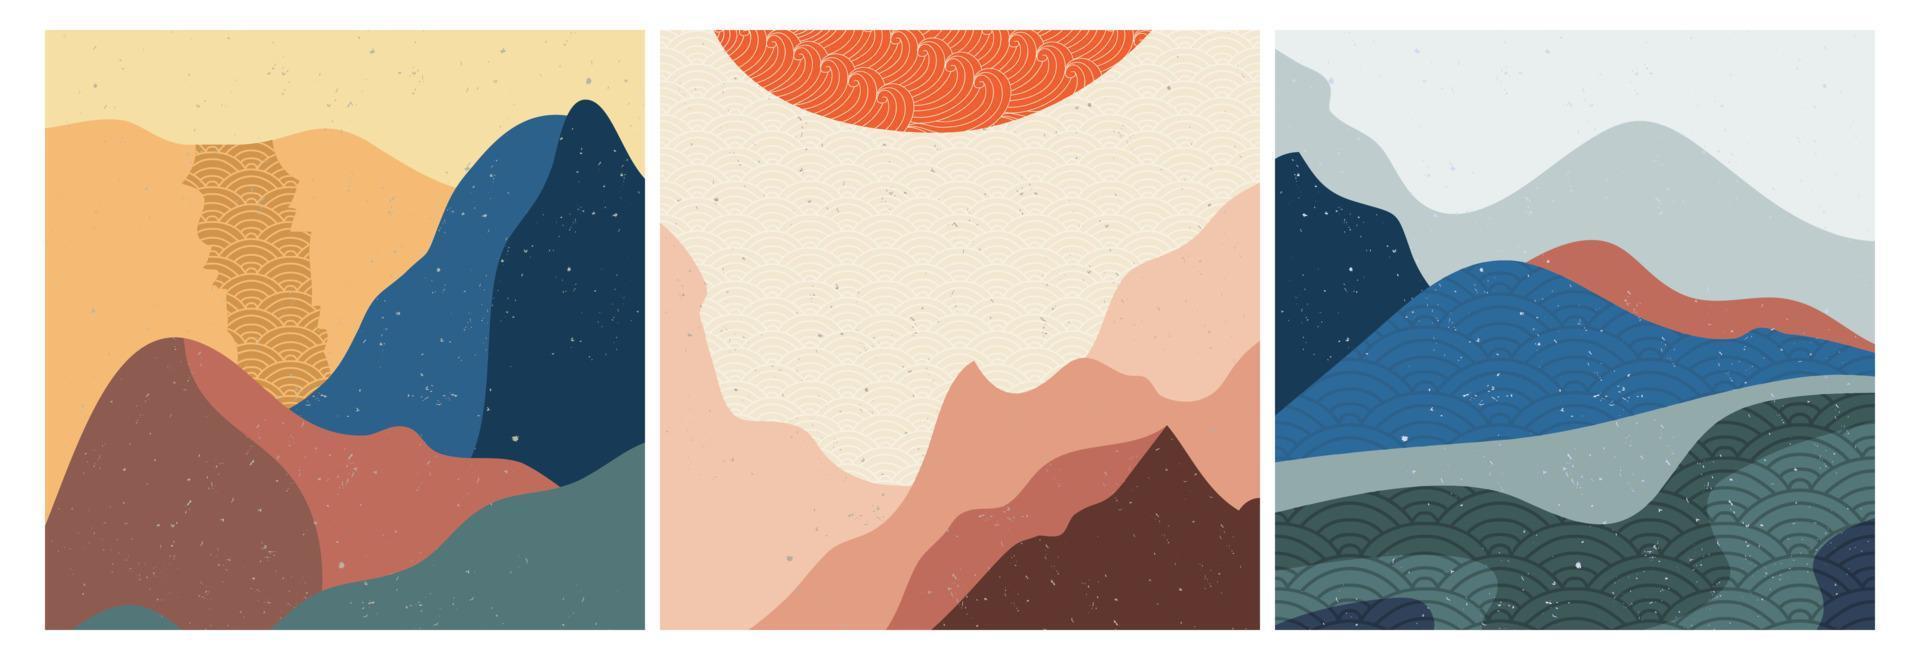 nature abstraite, mer, ciel et paysage de montagne. fond de paysage géométrique dans un style japonais asiatique. illustration vectorielle vecteur